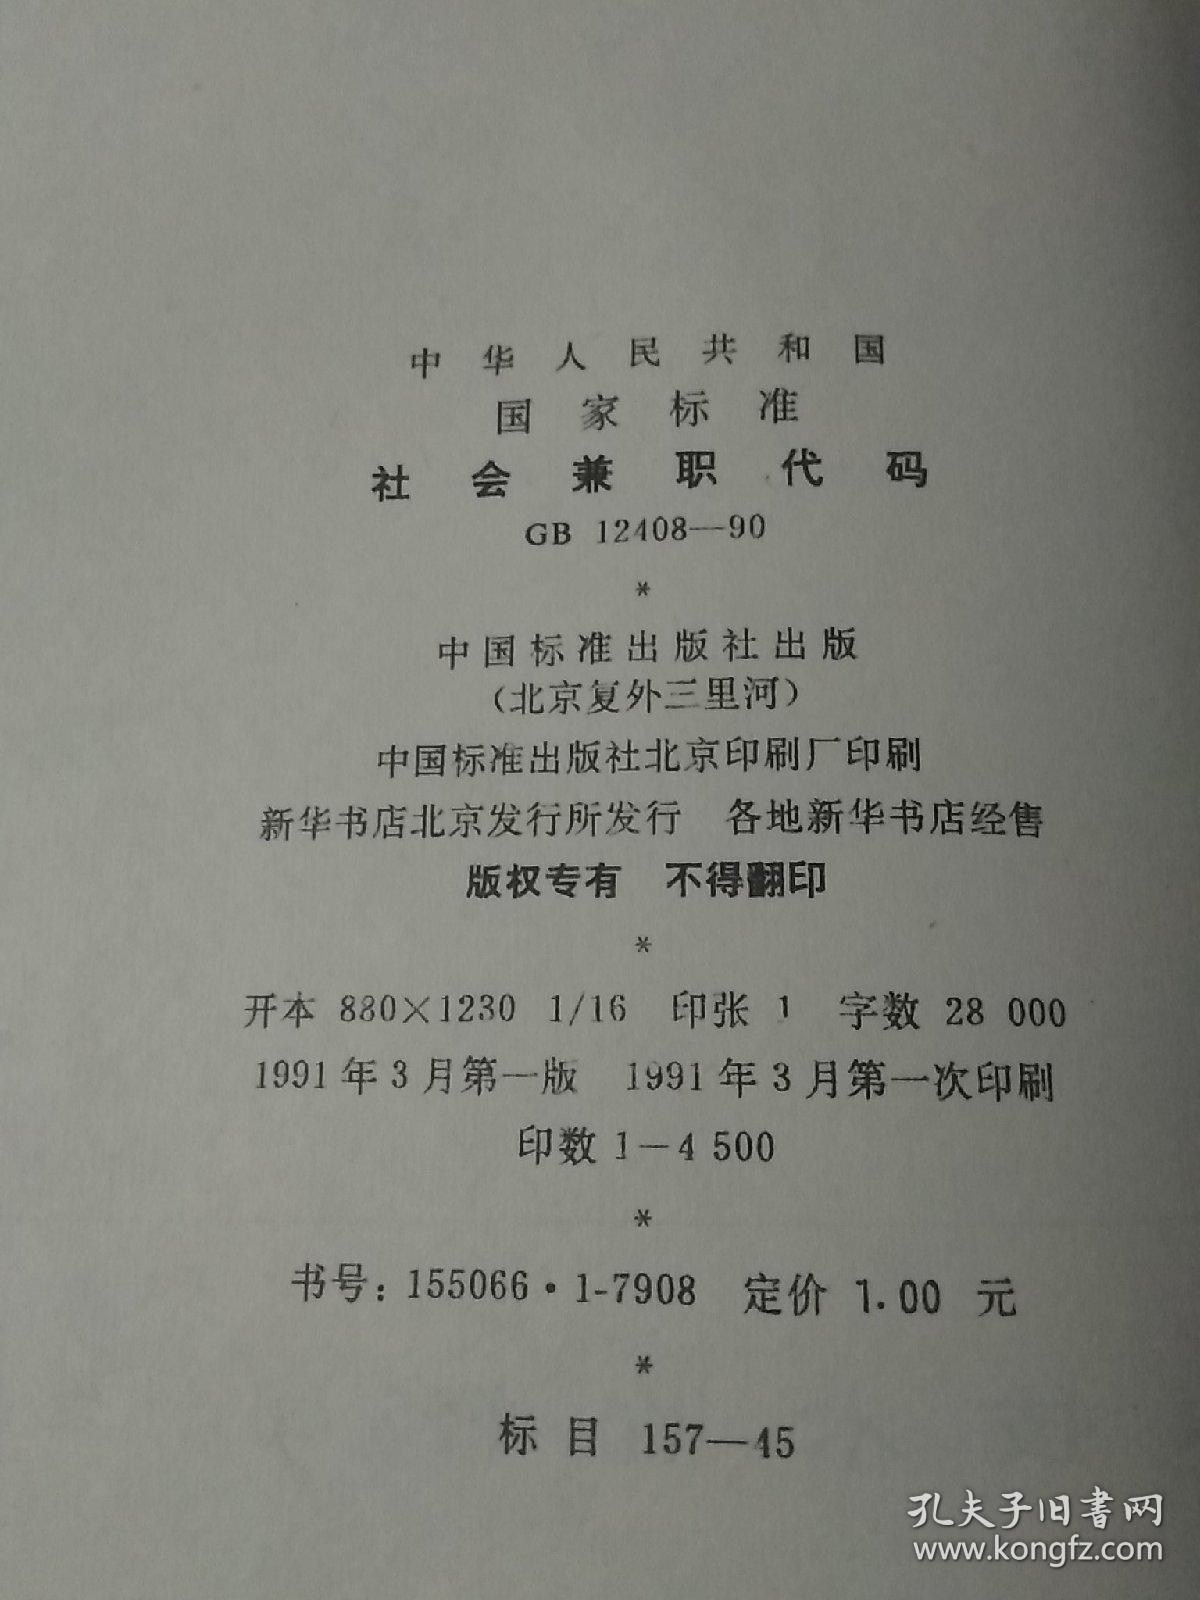 中华人民共和国国家标准 社会兼职代码